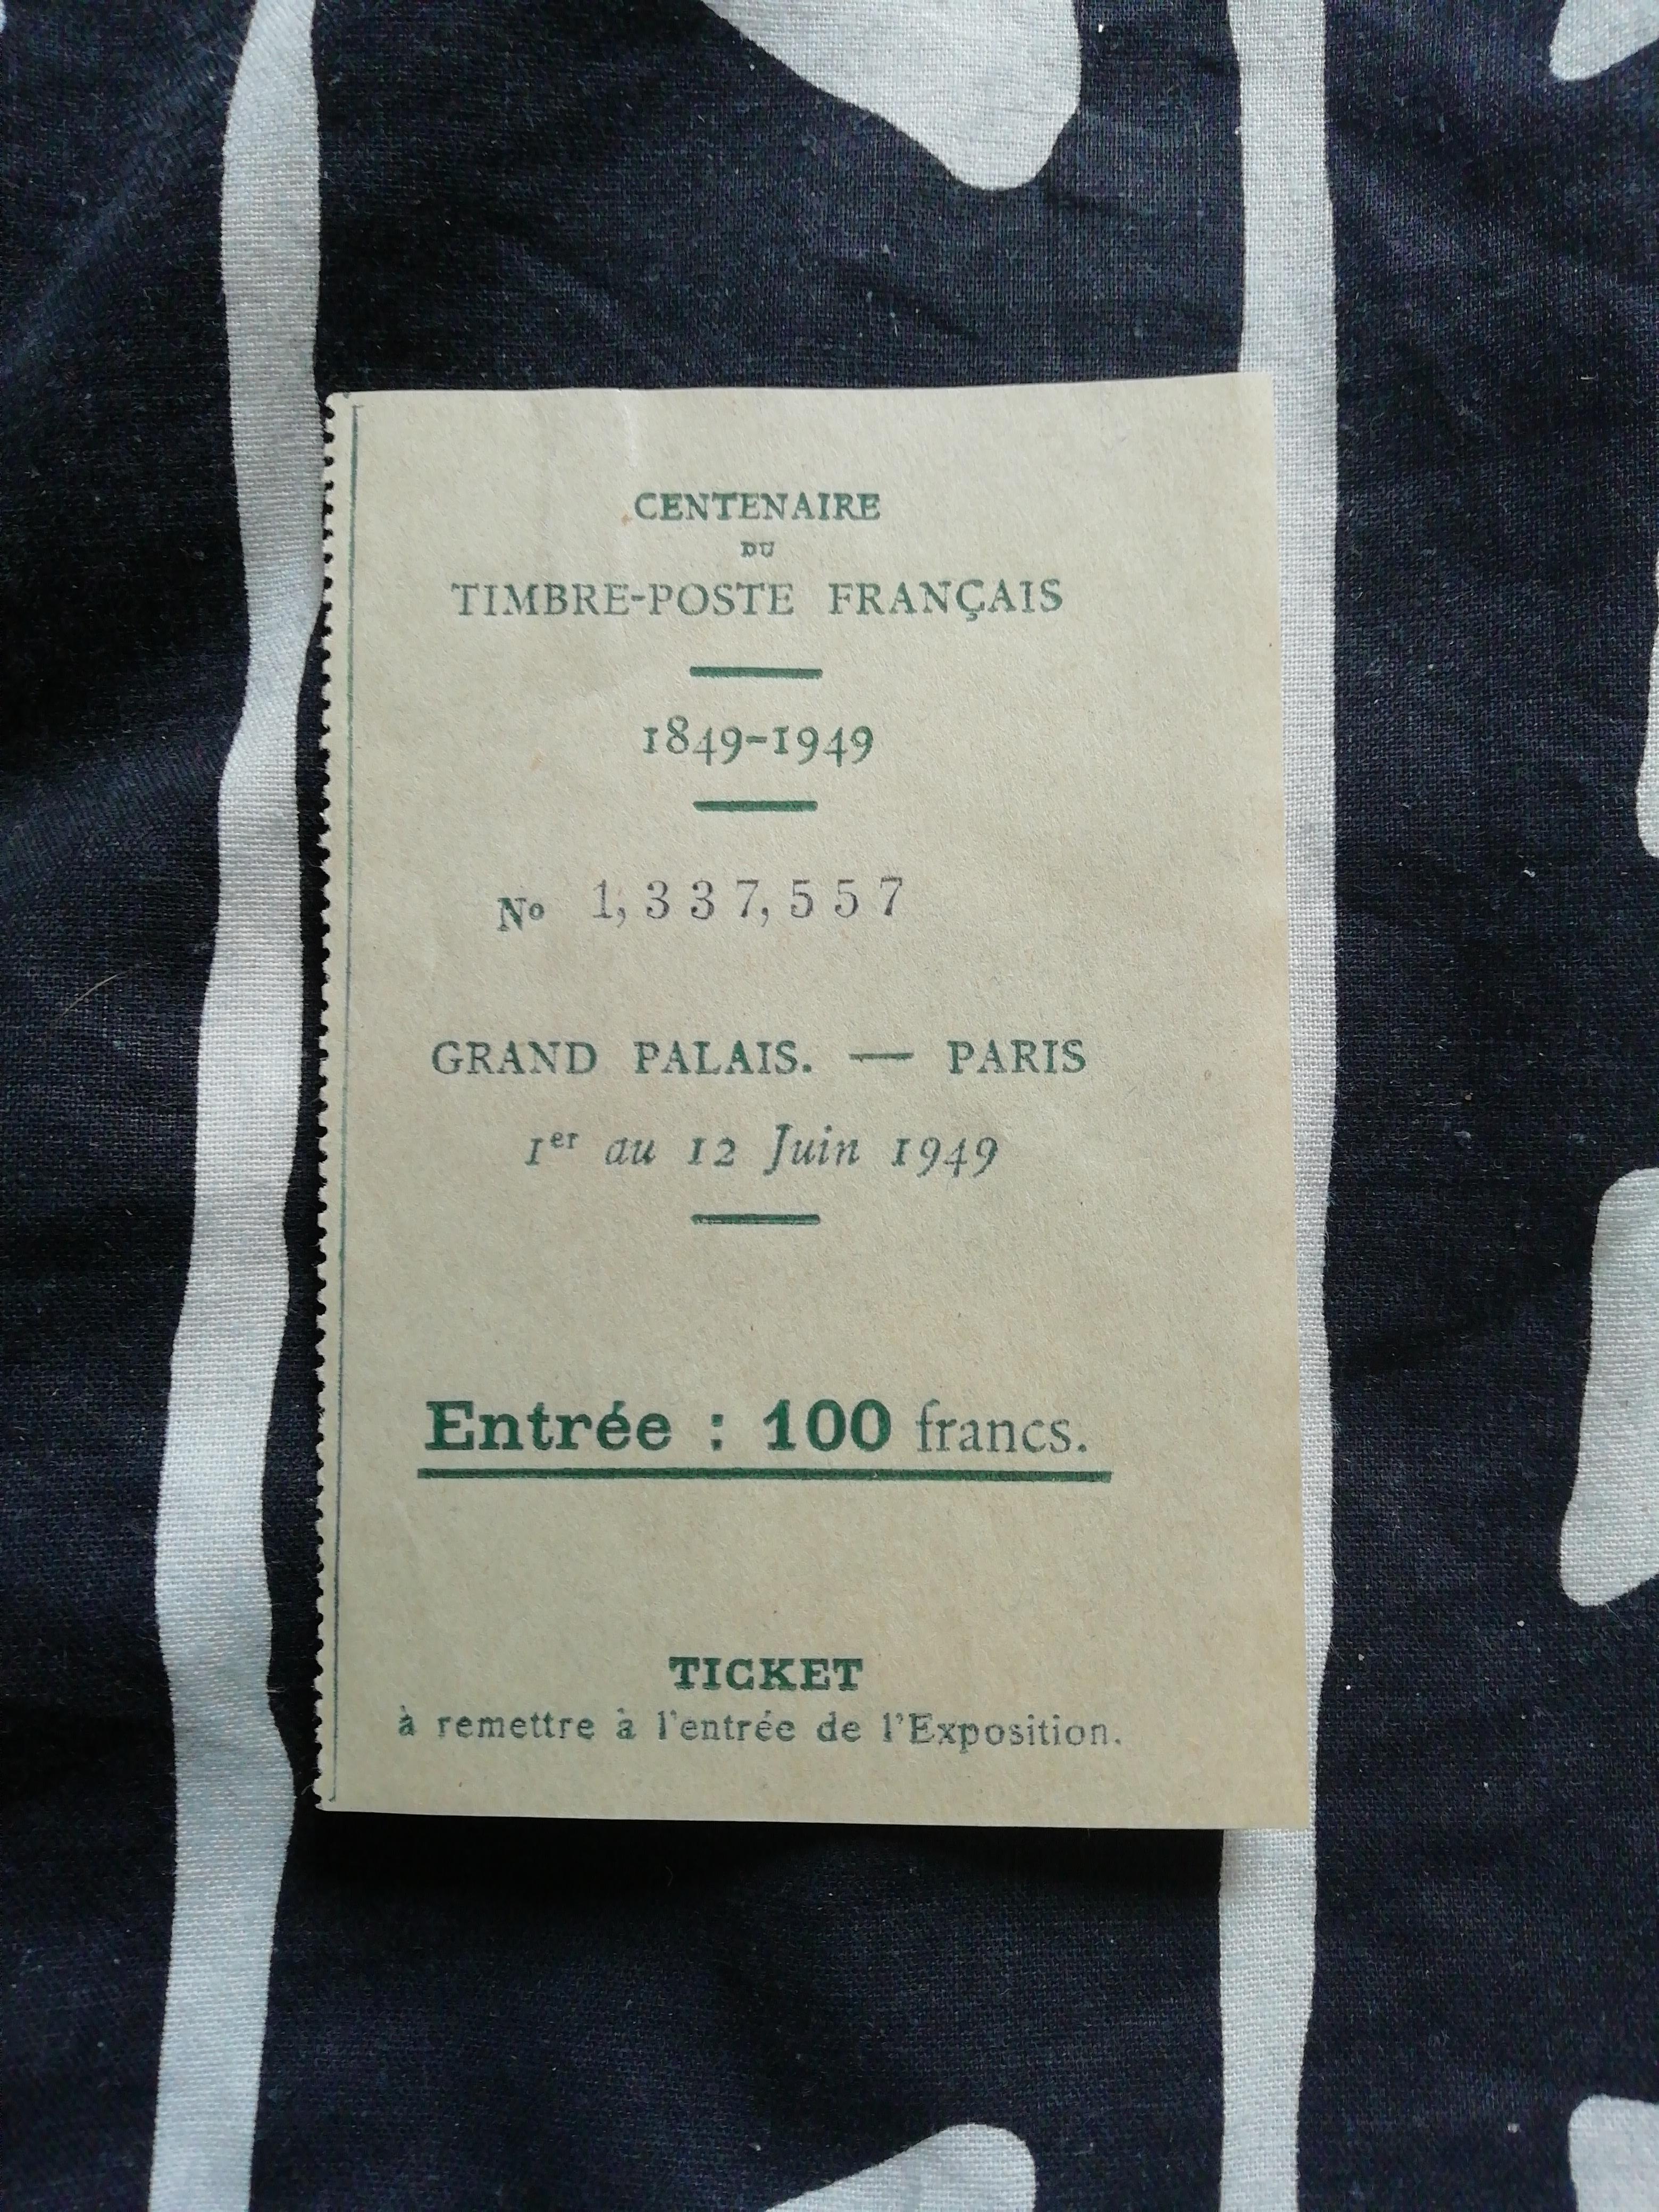 troc de troc ticket exposition 1949 image 0